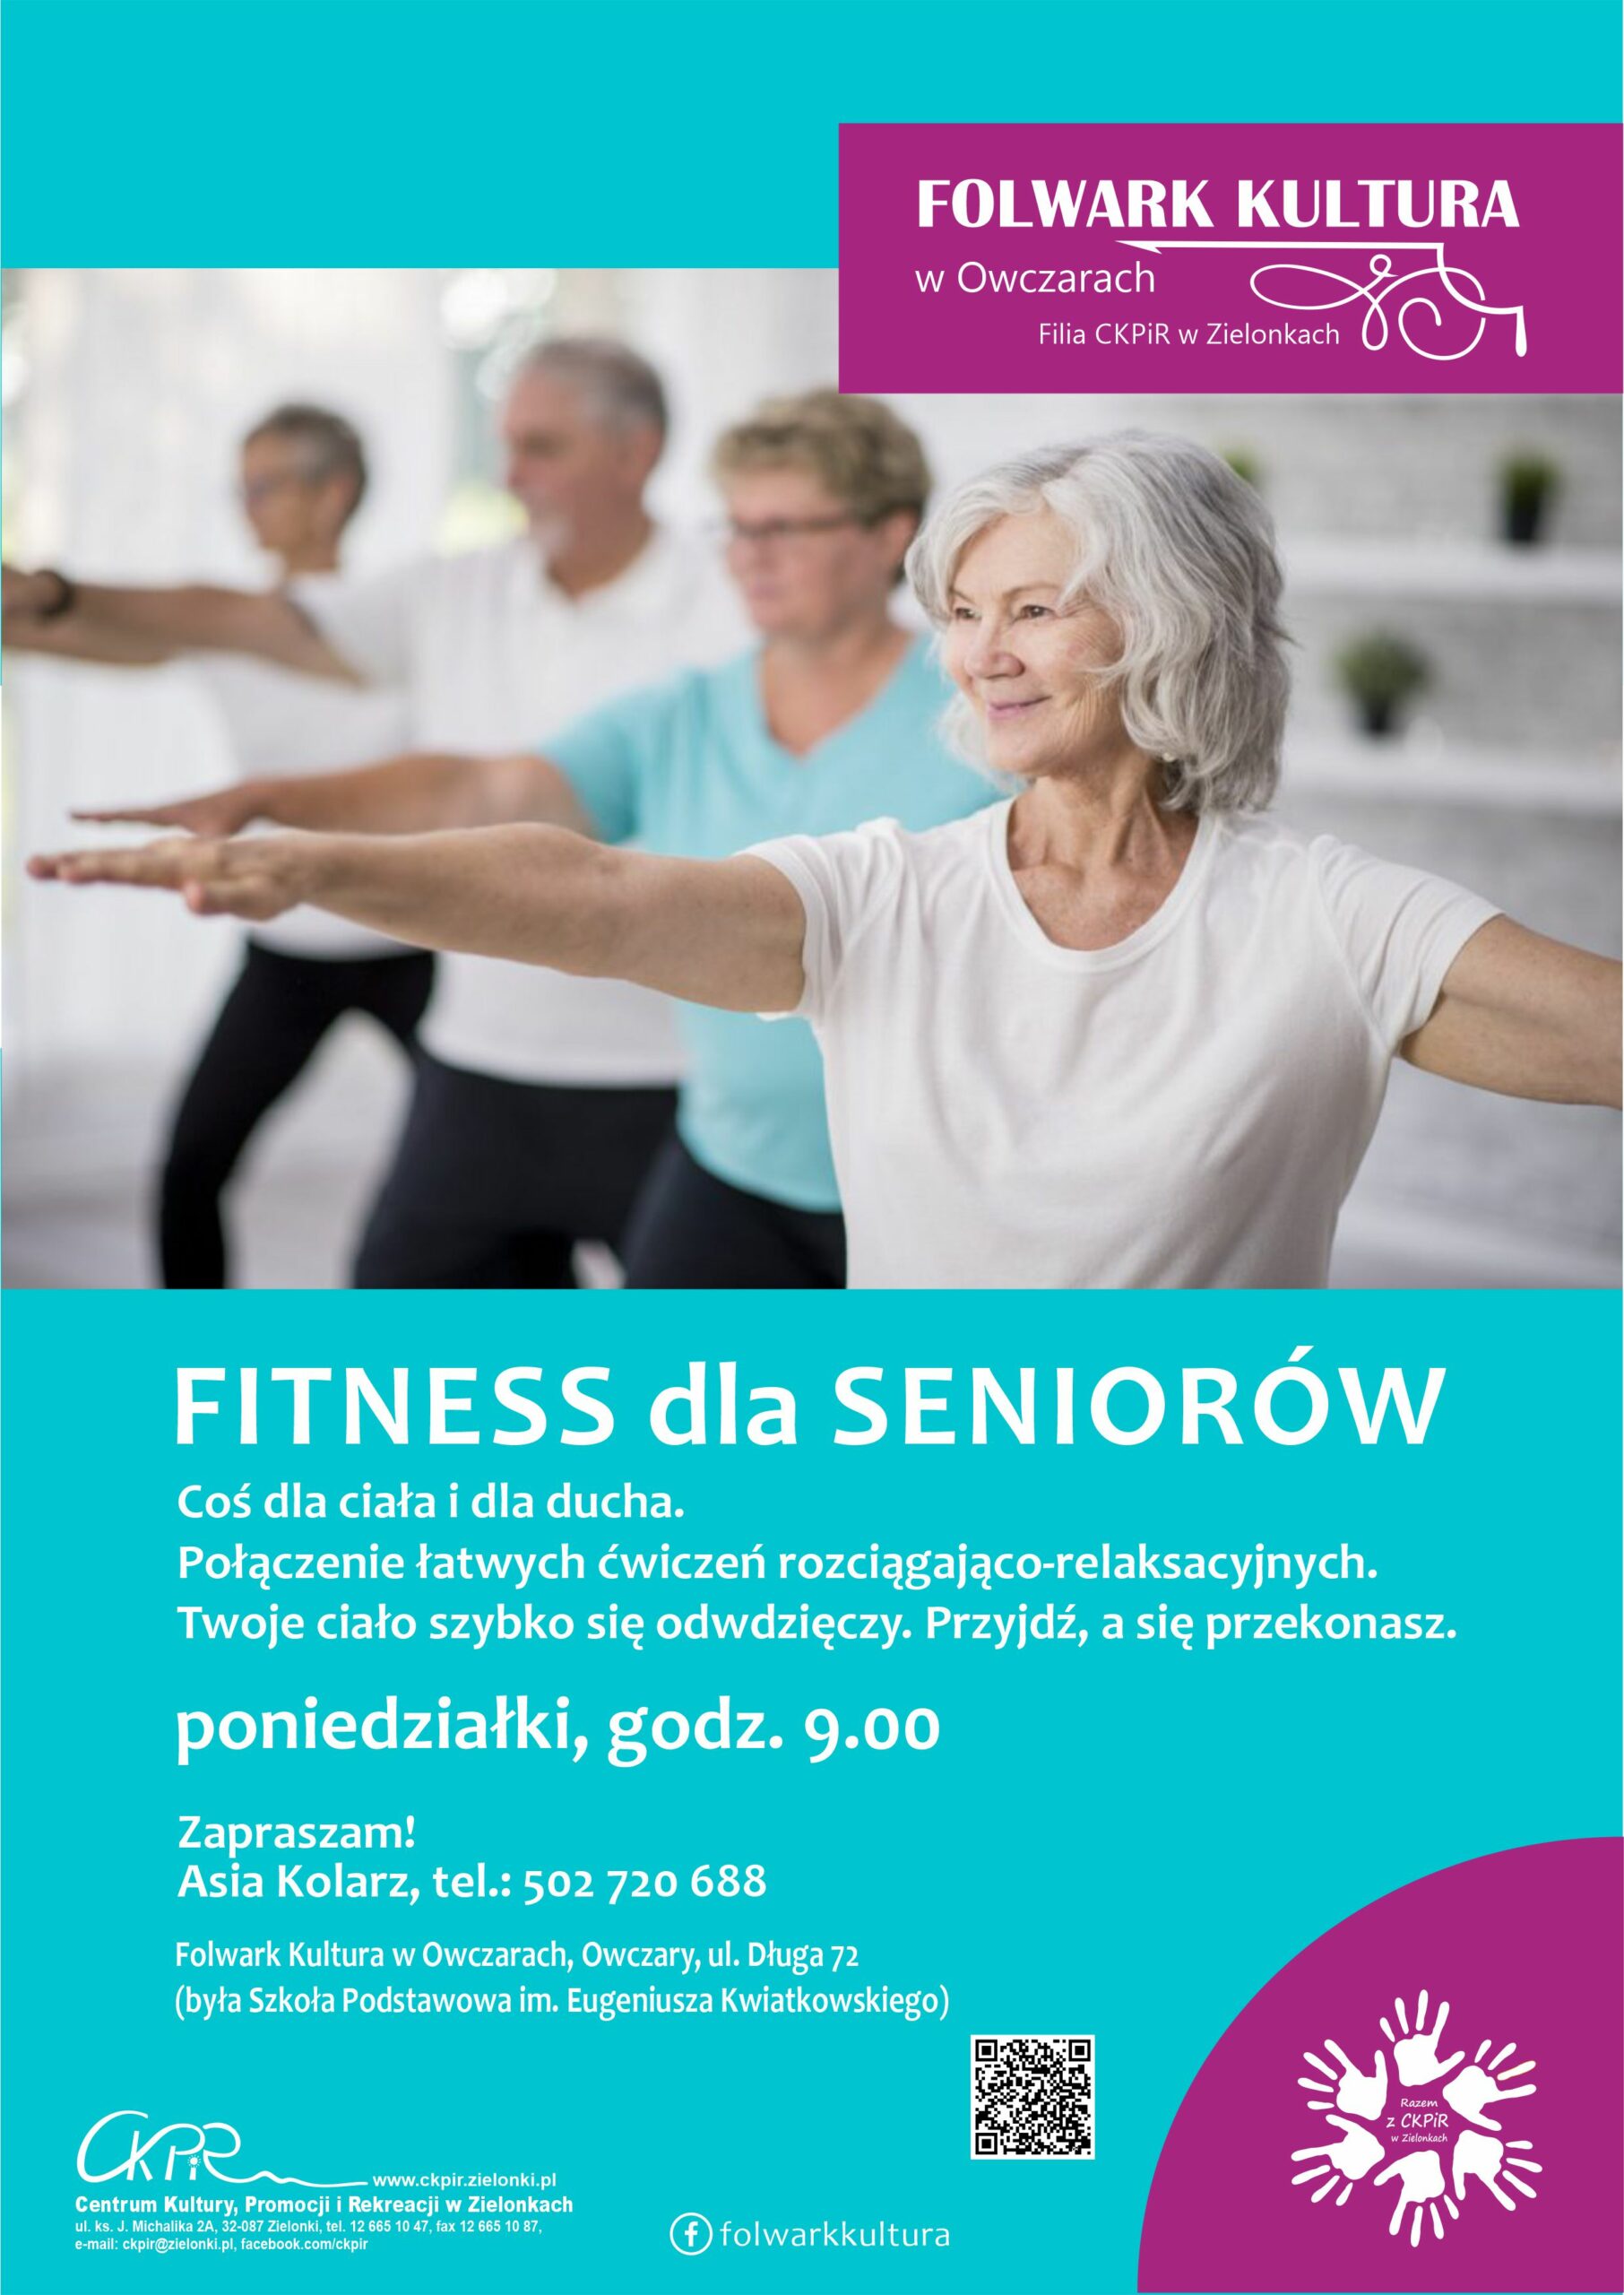 Fitness dla seniorów, zdrowy kręgosłup, klub zdrowego odżywiania, zumba i zumba kids w Folwarku Kultura